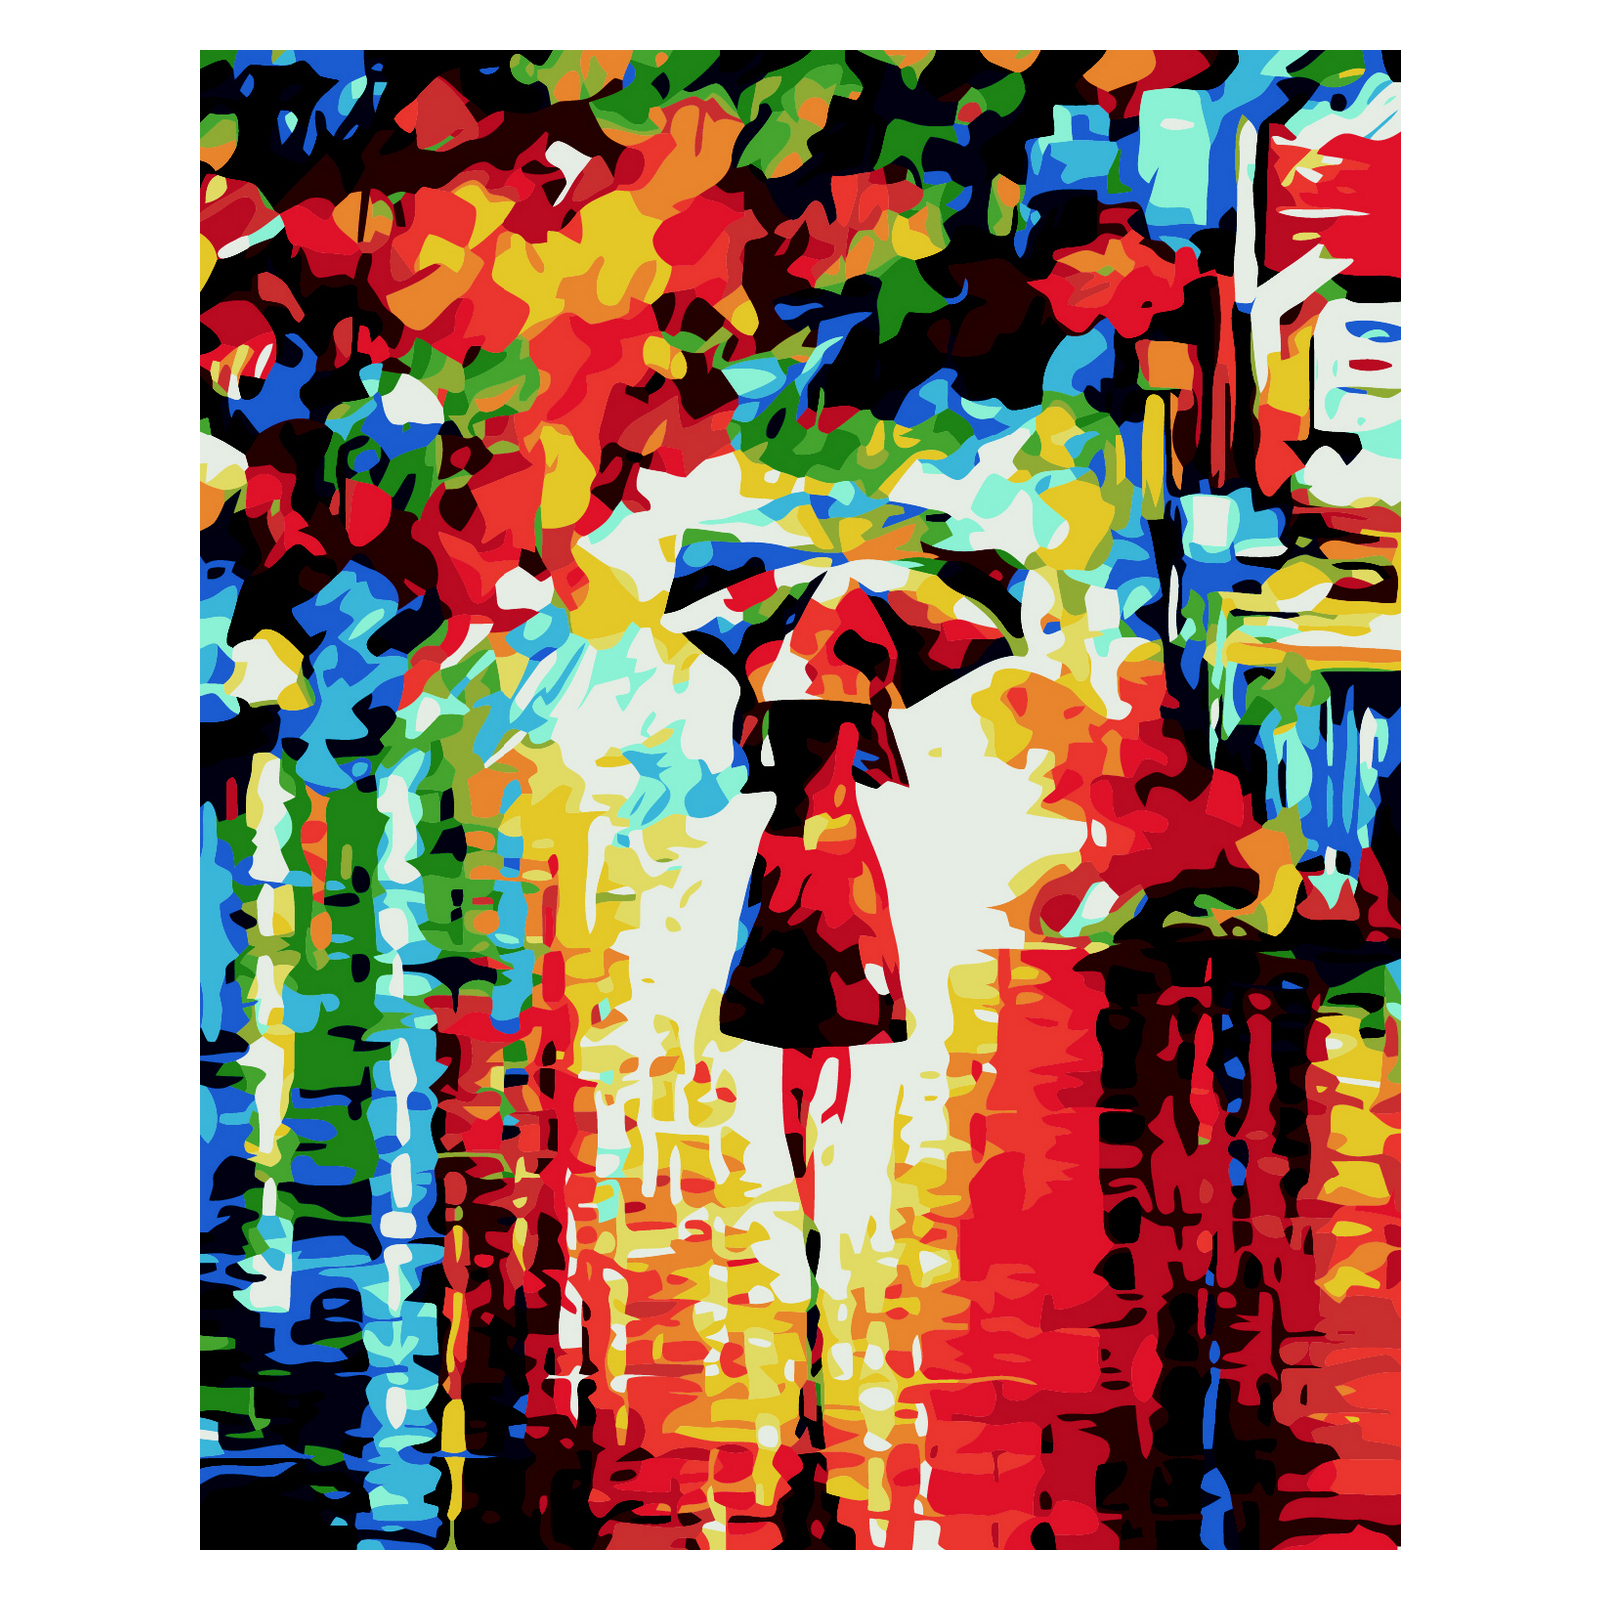 Картина по номерам ZiBi Девушка с зонтиком 40*50 см ART Line (ZB.64166)